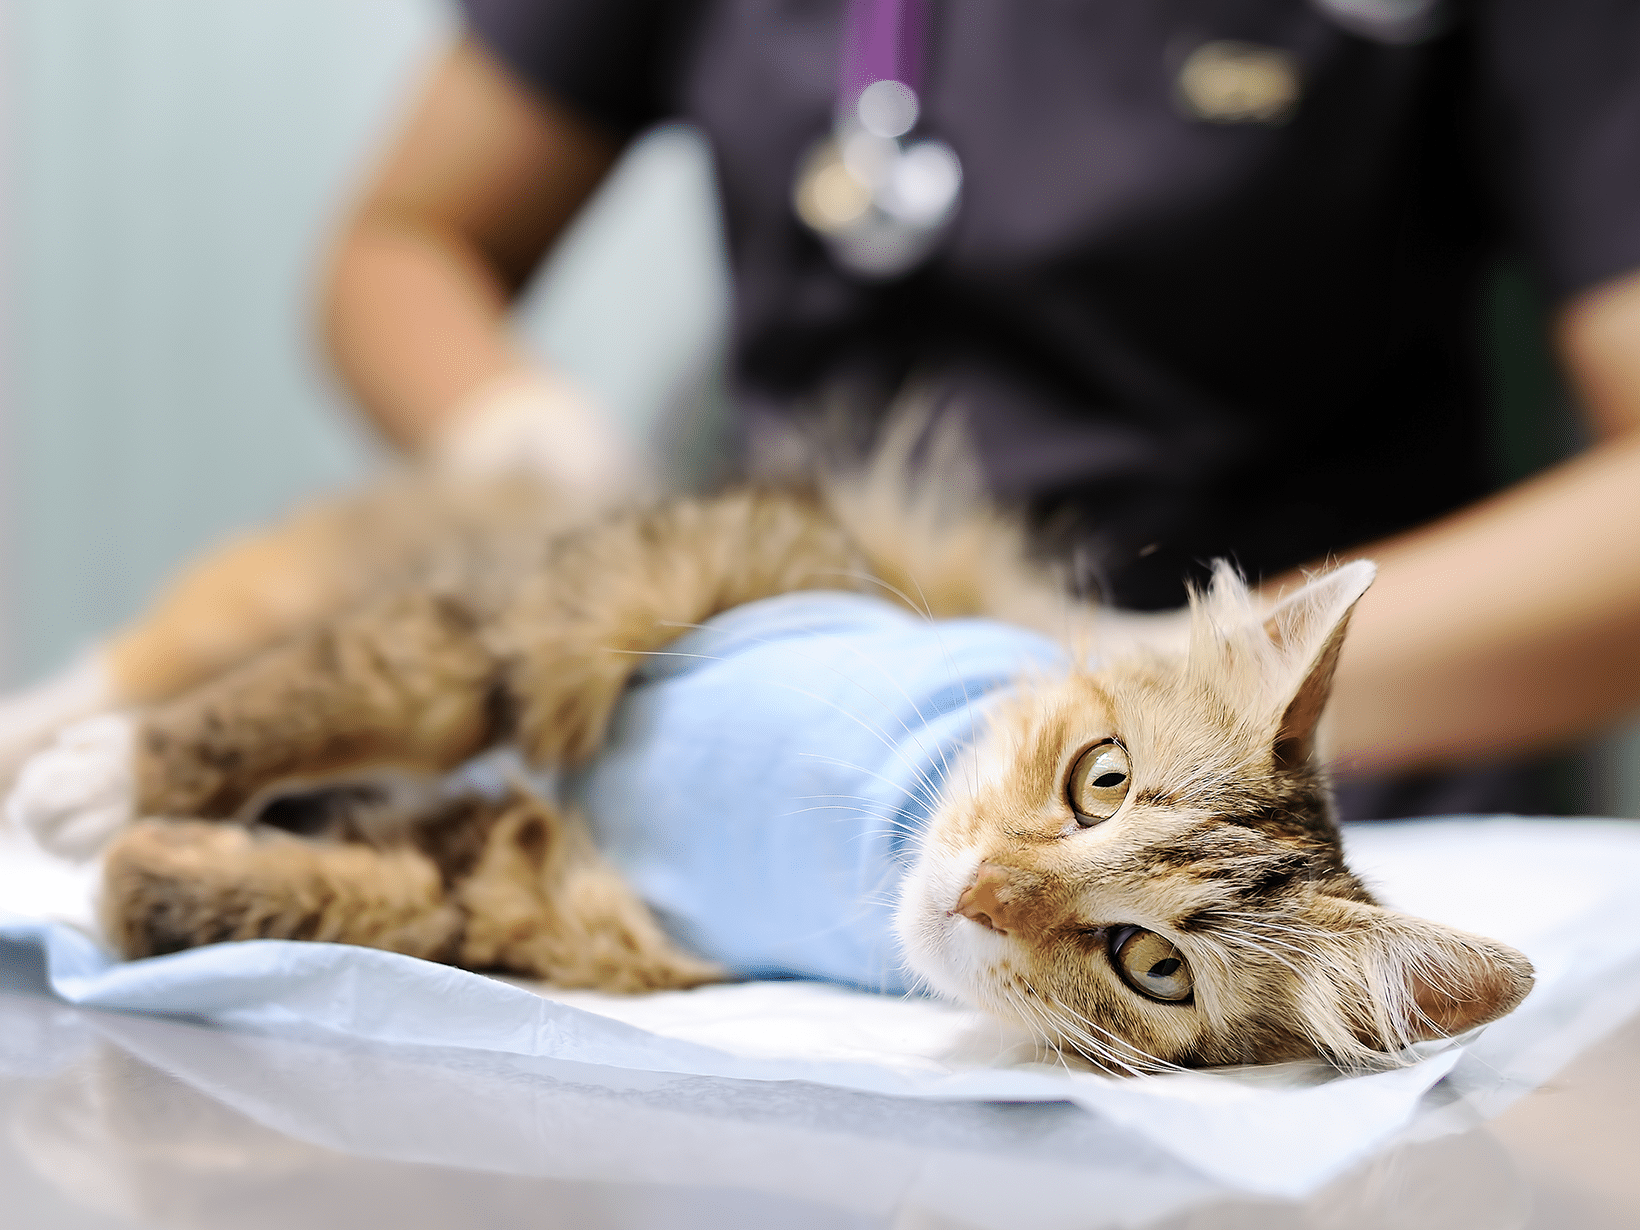 Hoelang duurt een sterilisatie bij een kat